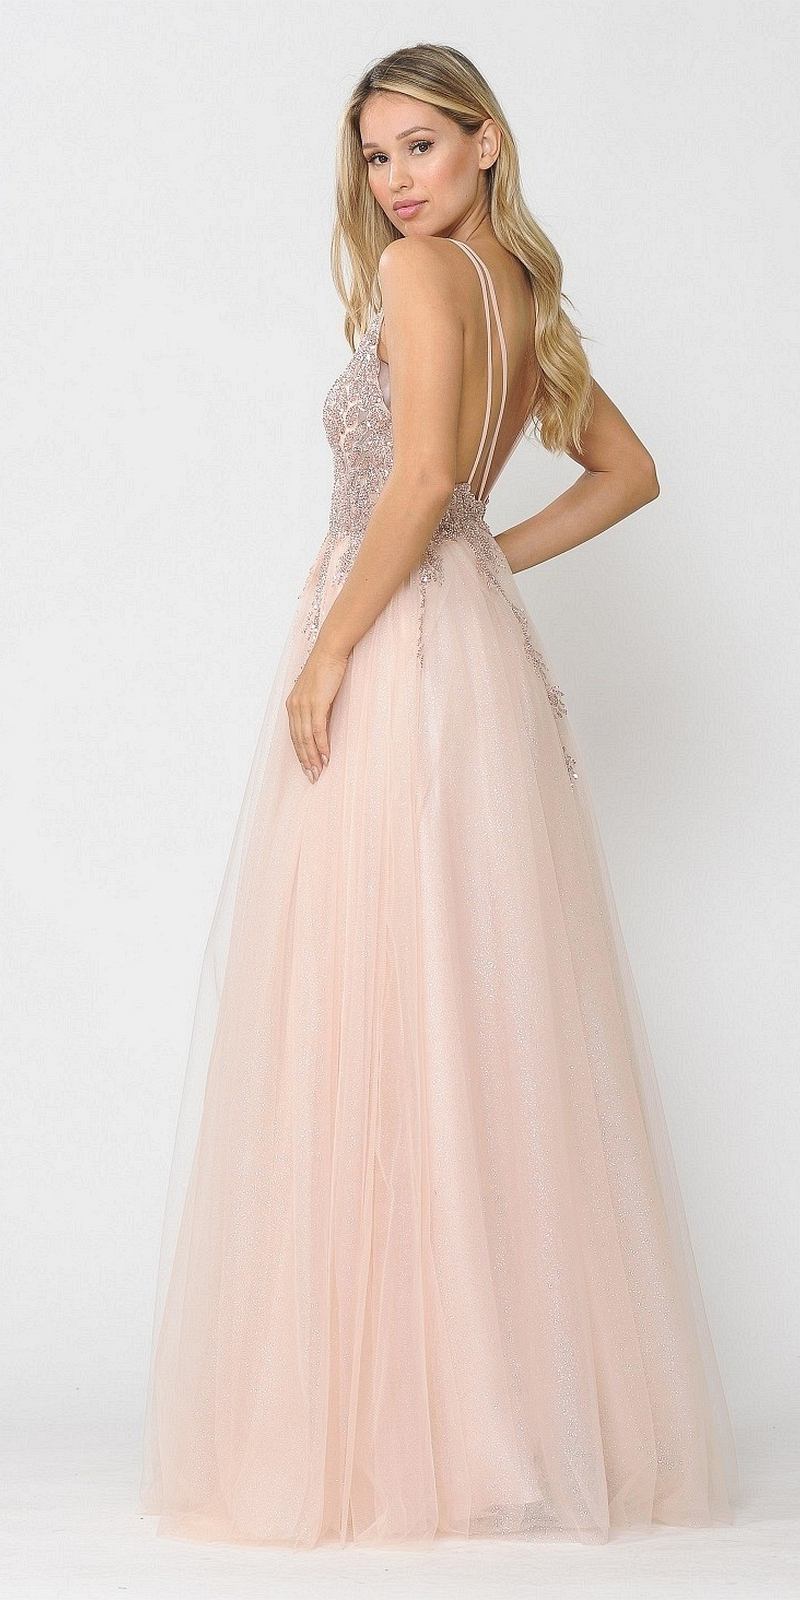 Poly USA 8718 Rose Gold Embellished Bodice Long Prom Dress